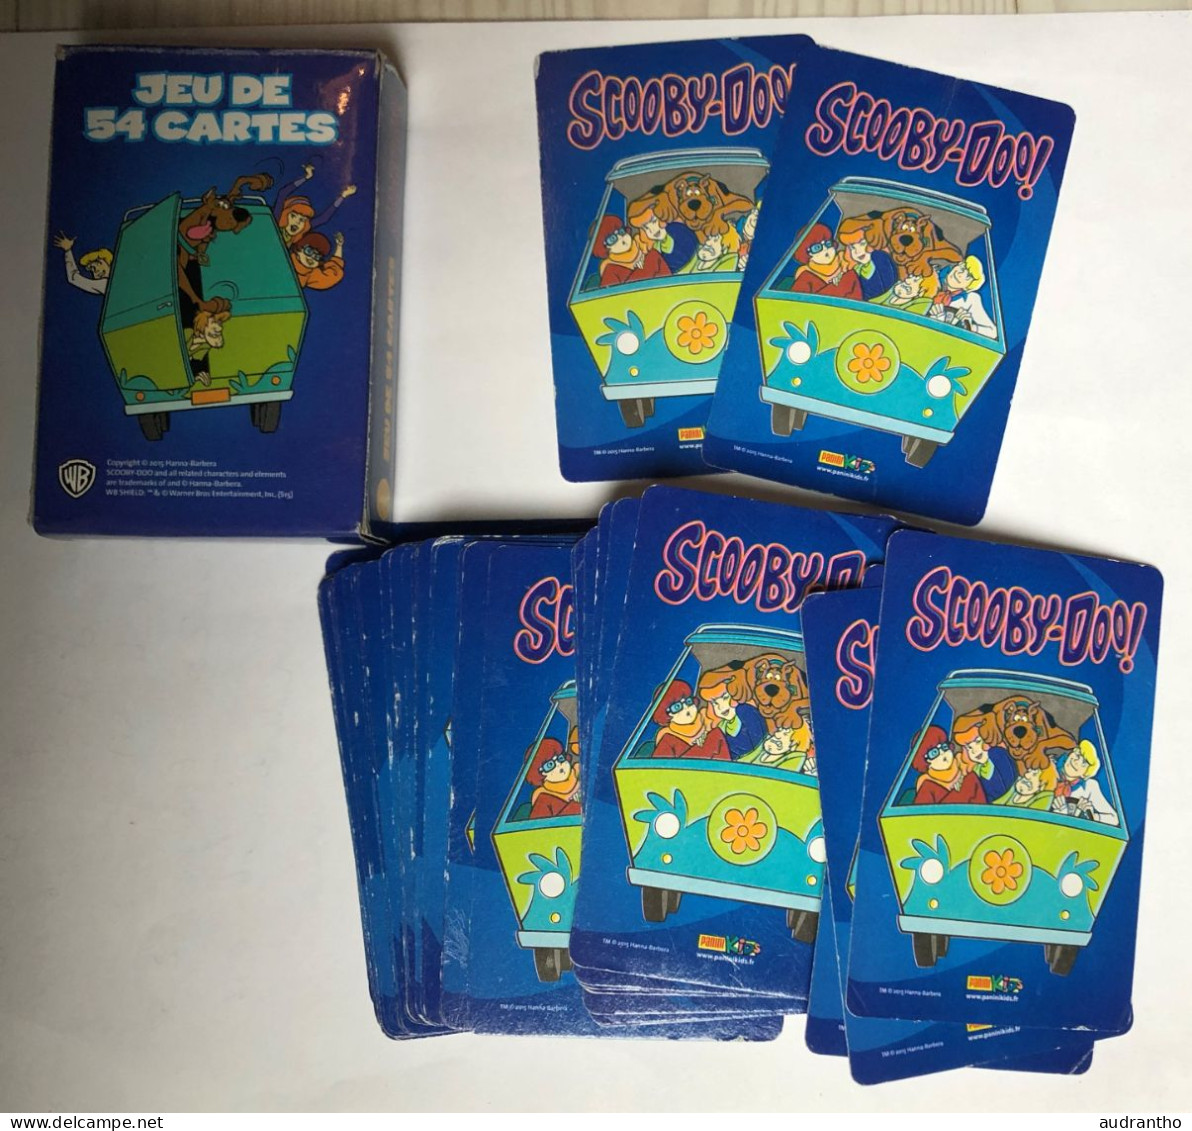 Jeu De 54 Cartes SCOOBY-DOO - Playing Cards 2015 Hanna Barbera - 54 Cartes